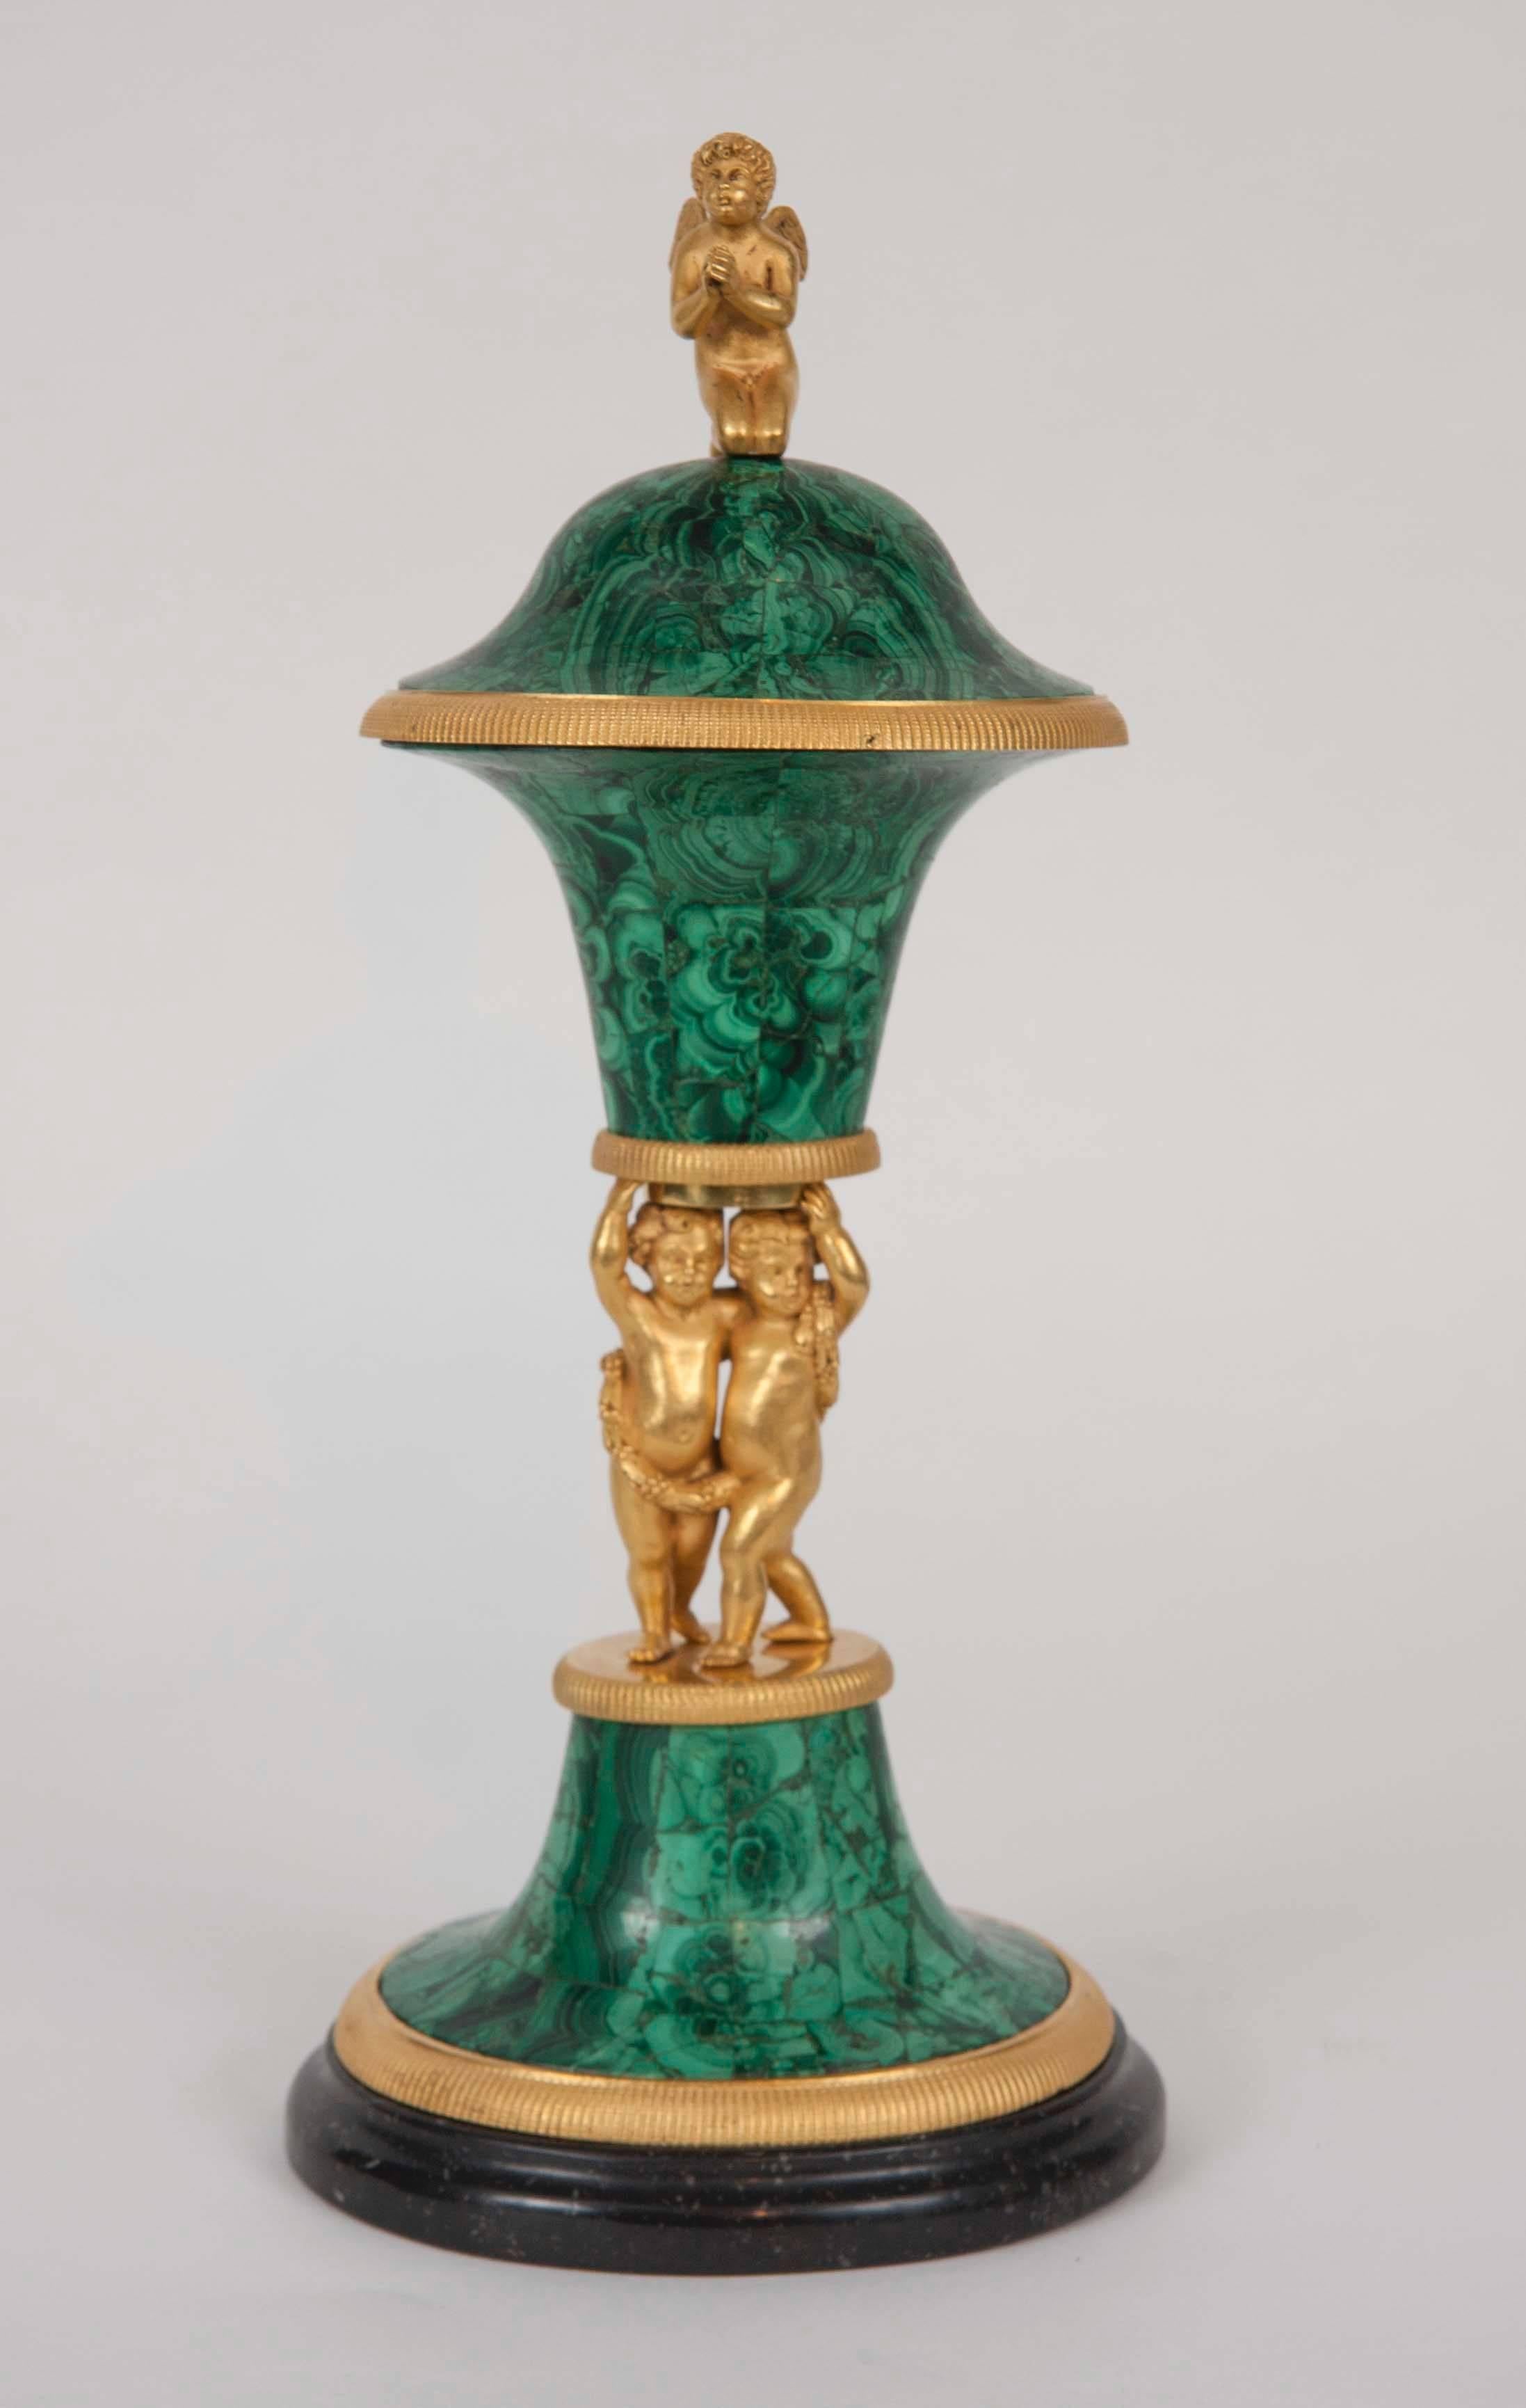 Eine russische Vase aus vergoldeter Bronze mit Malachitüberzug auf Porphyrsockel.
Form von geflügelten Amoretten, die eine Malachitvase tragen.
Russland, um 1800.
Höhe 14 Zoll.

Ein ähnliches Stück wurde bei Sotheby's London verkauft (7.